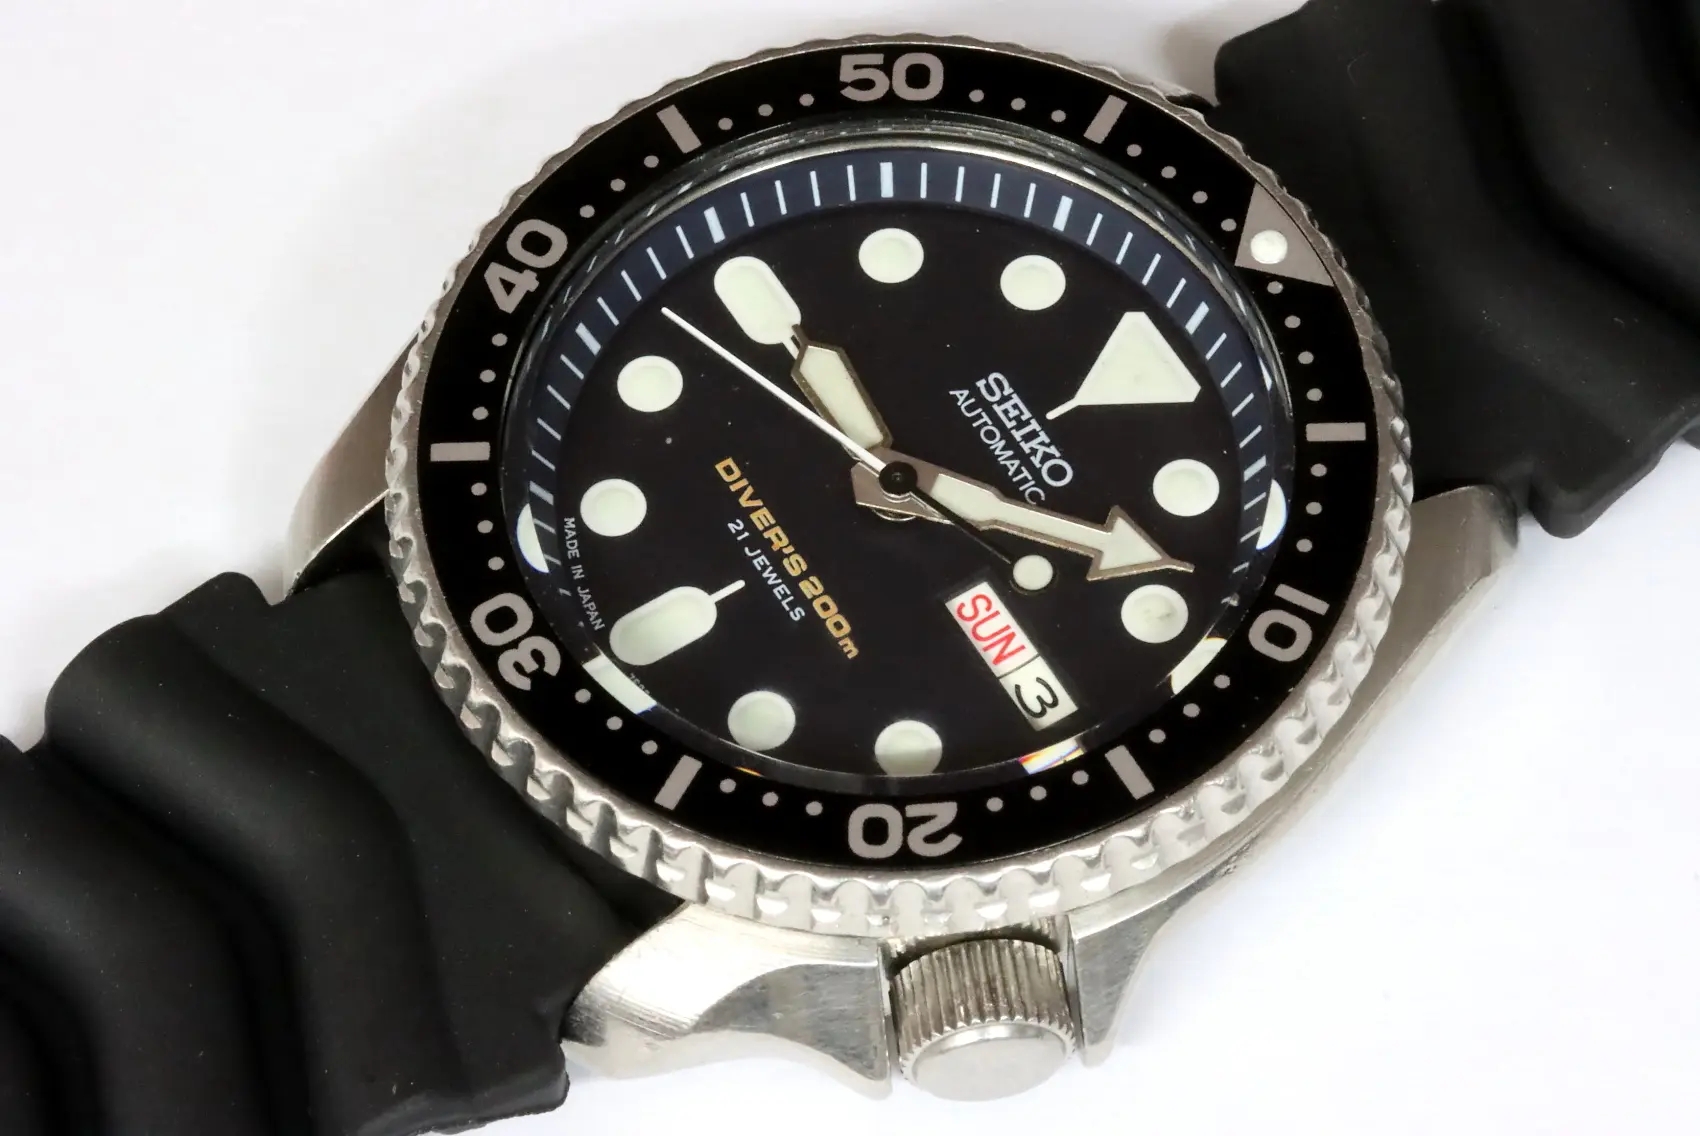 Seiko 7S26-0020 SKX007 Japanese market diver's watch